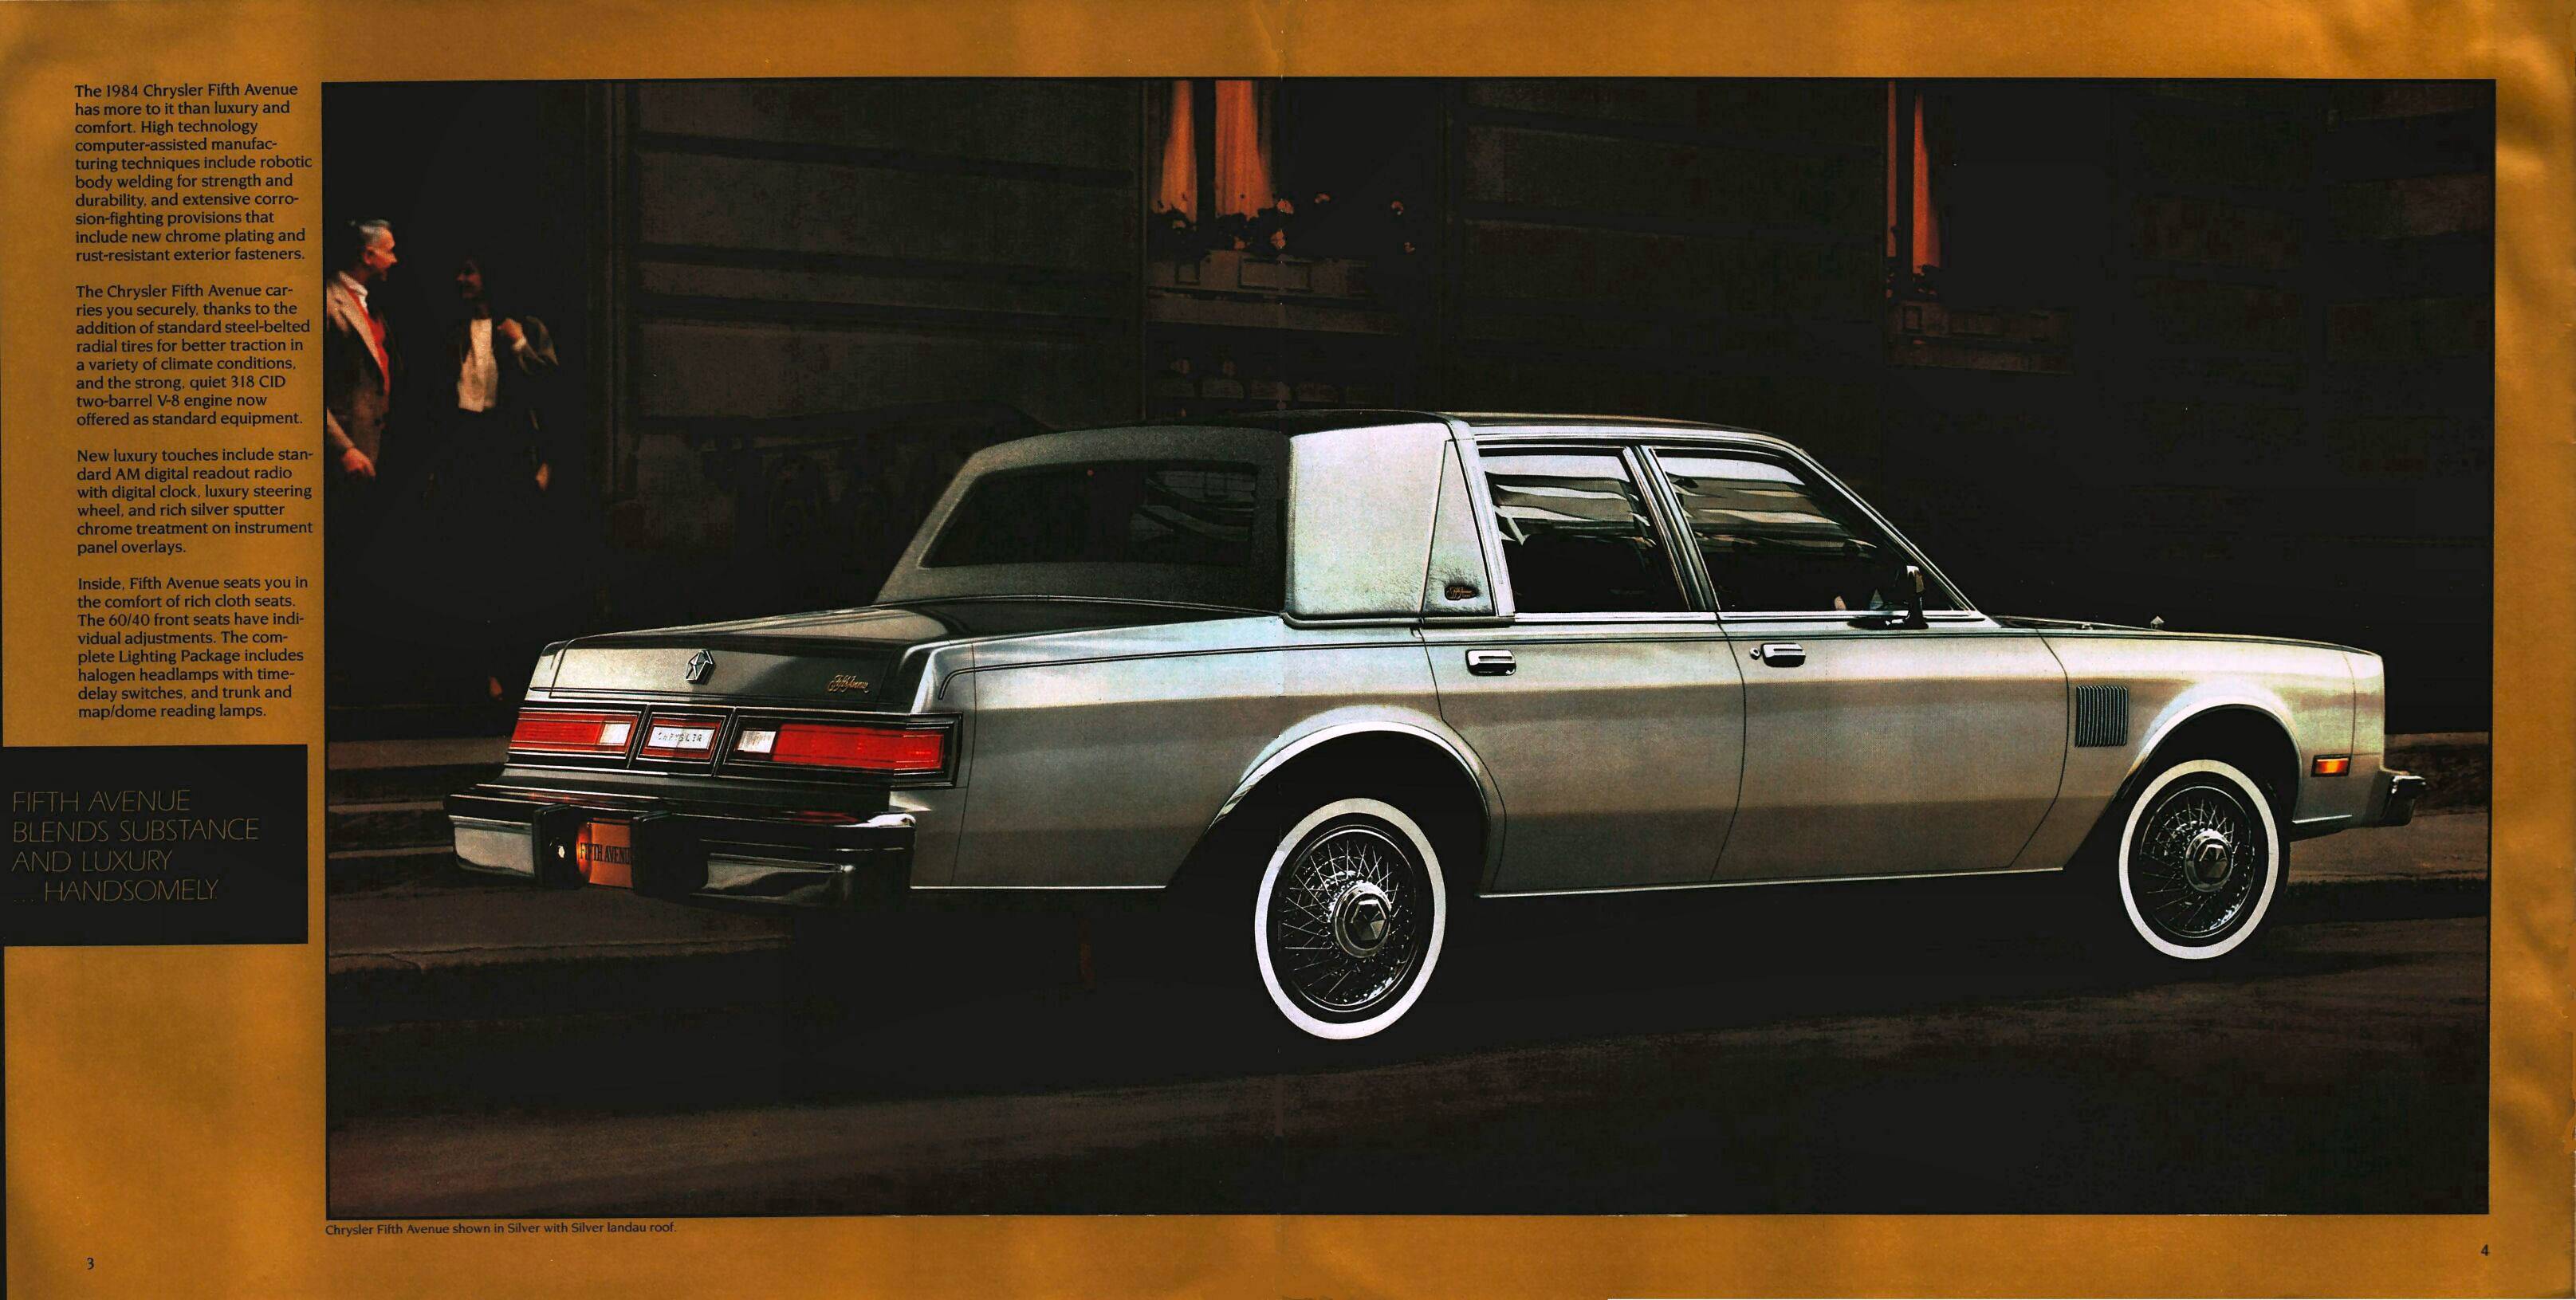 1984 Chrysler Fifth Avenue-03-04.jpg